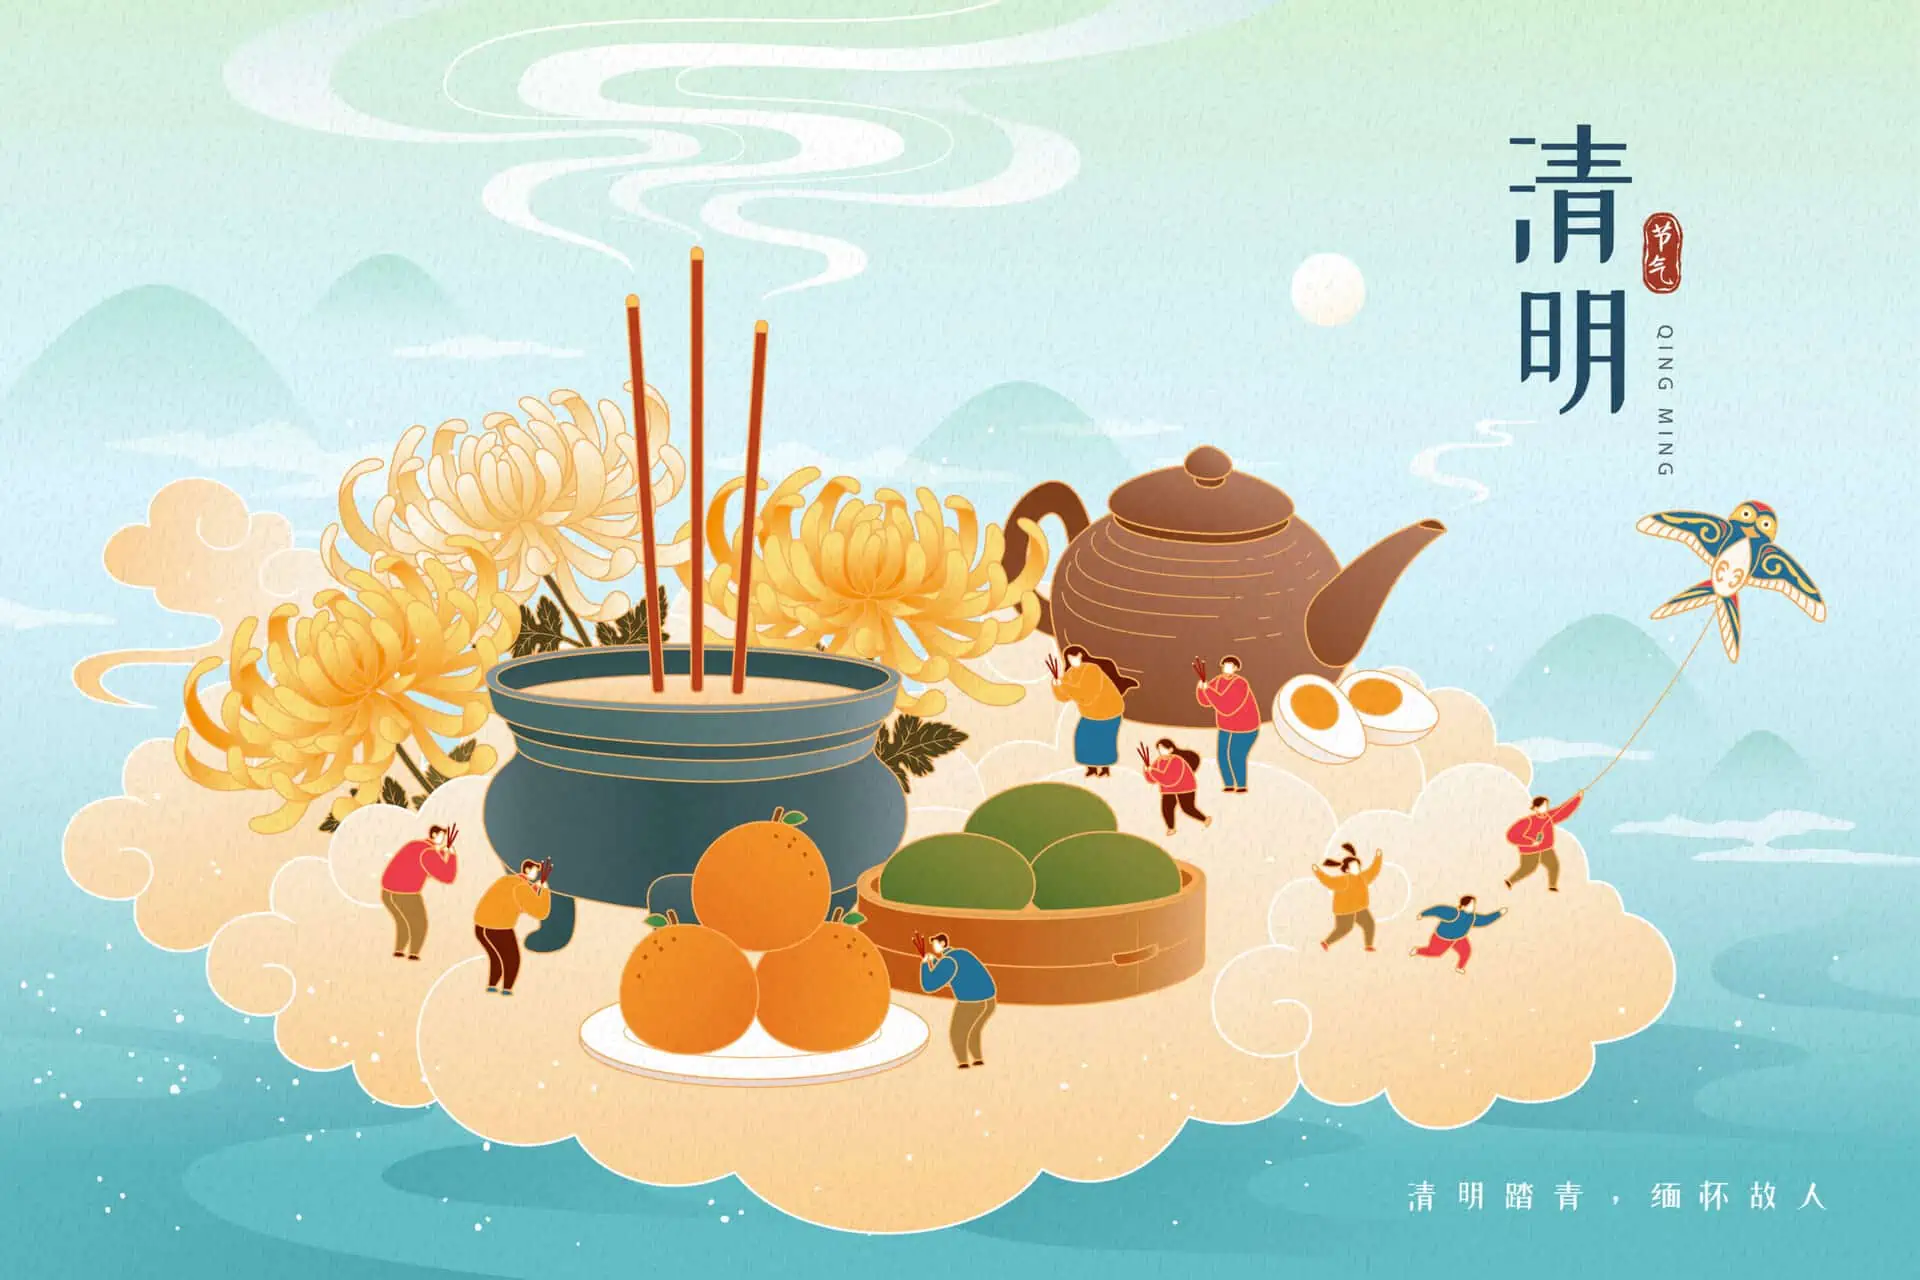 Kinas kulturelle traditioner: Qingming-festivalen